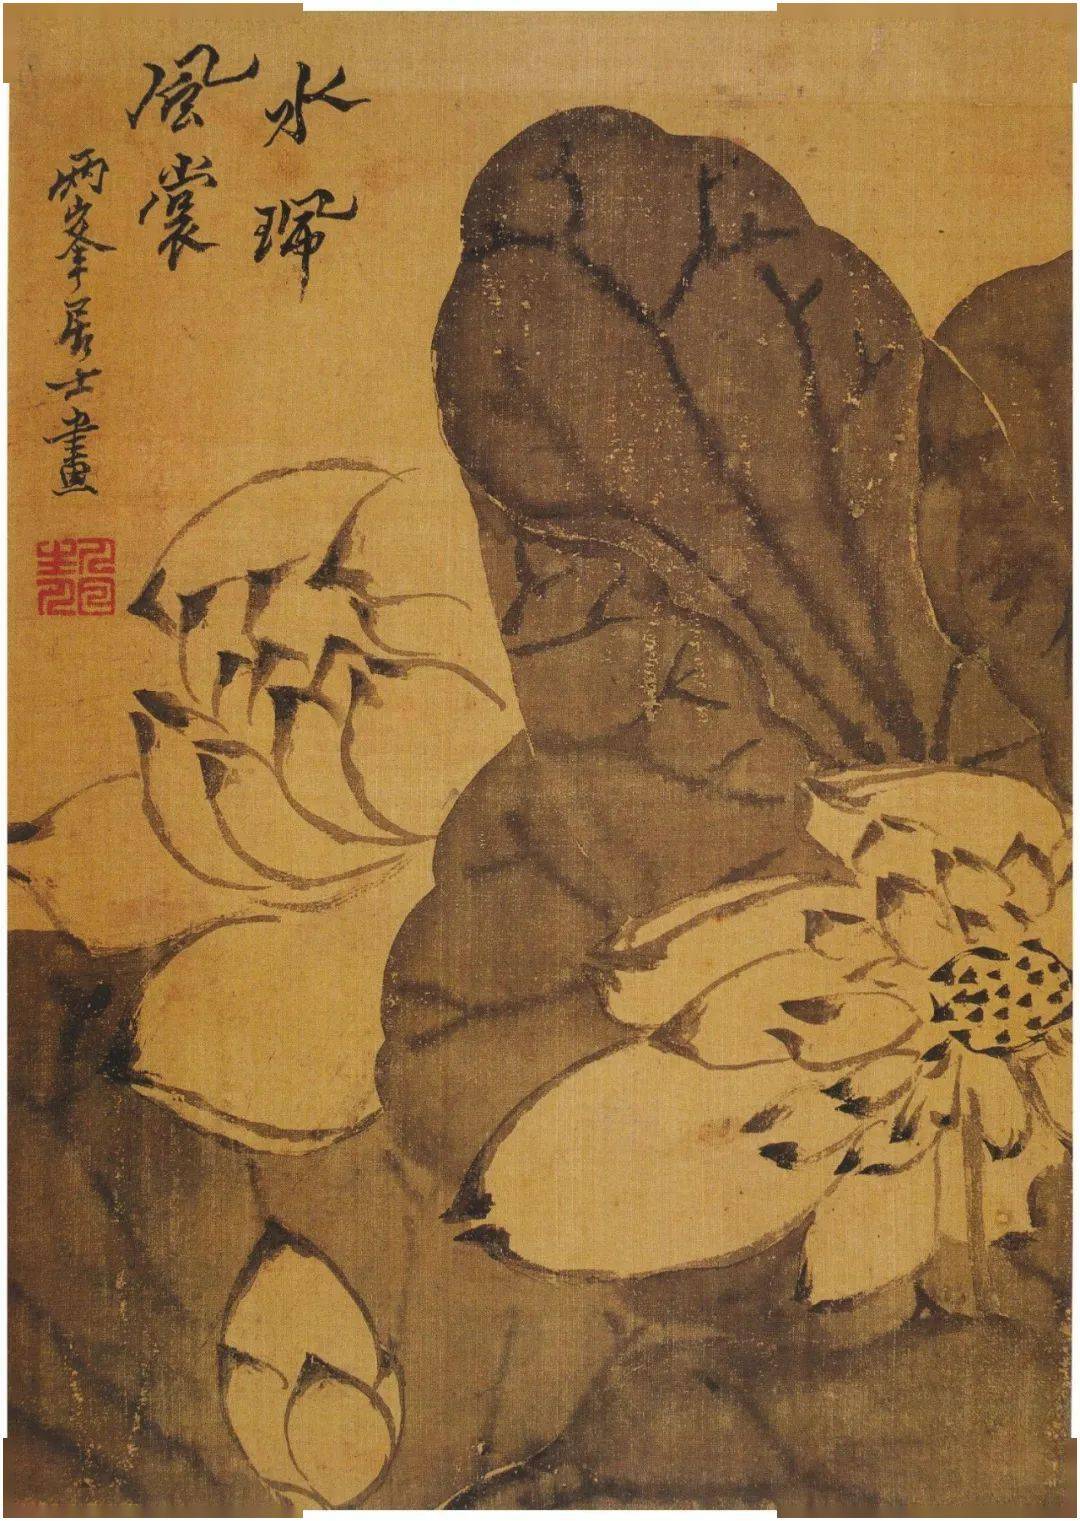 金农 罗聘动物花卉册欣赏金,罗二位原属师徒,均为扬州八怪重要画家